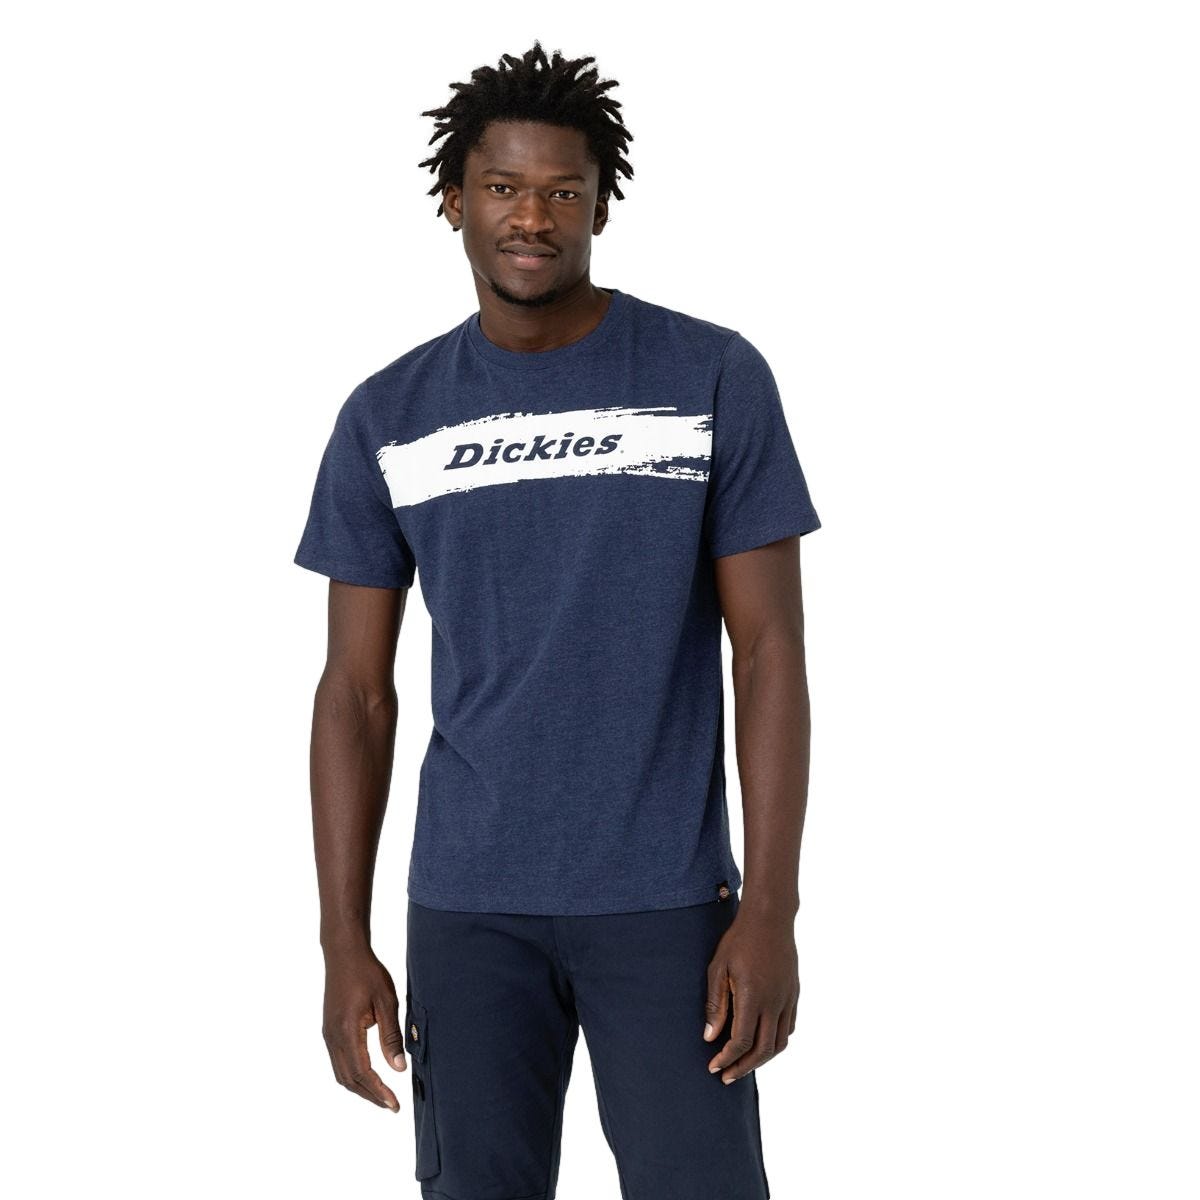 T-shirt à manches courtes pour homme Stanton bleu marine - Dickies - Taille L 0